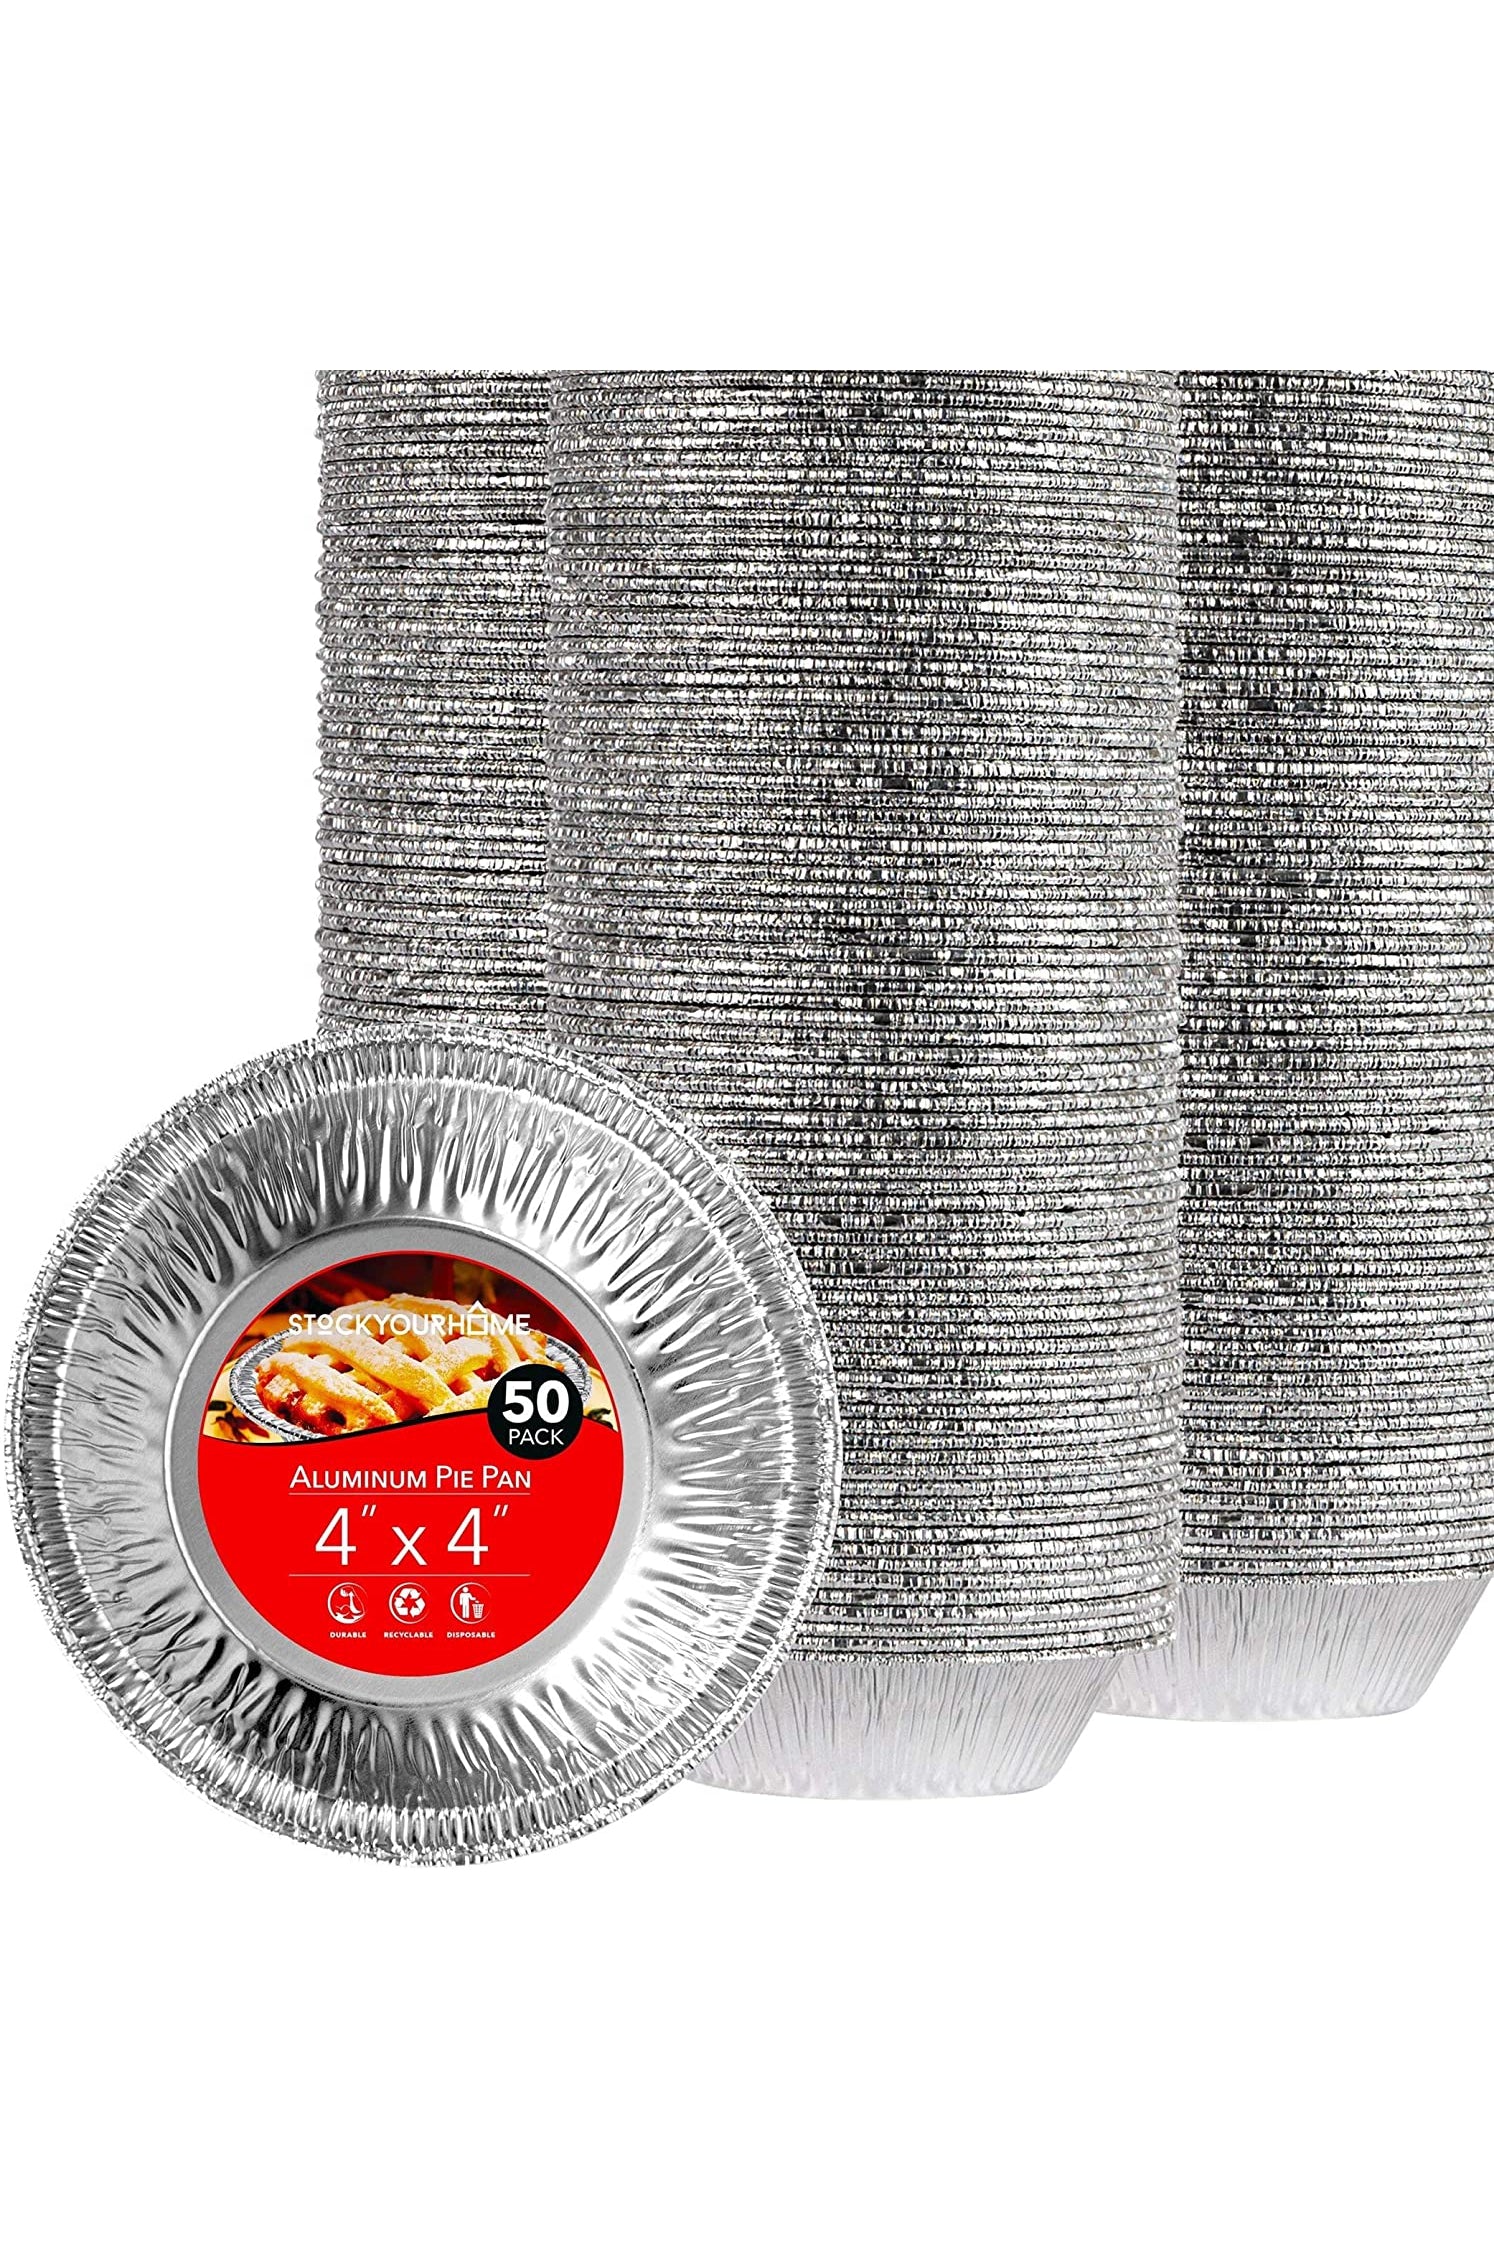 35 Pack 8x8 Inch Square Aluminum Foil Pans with Lids Disposable